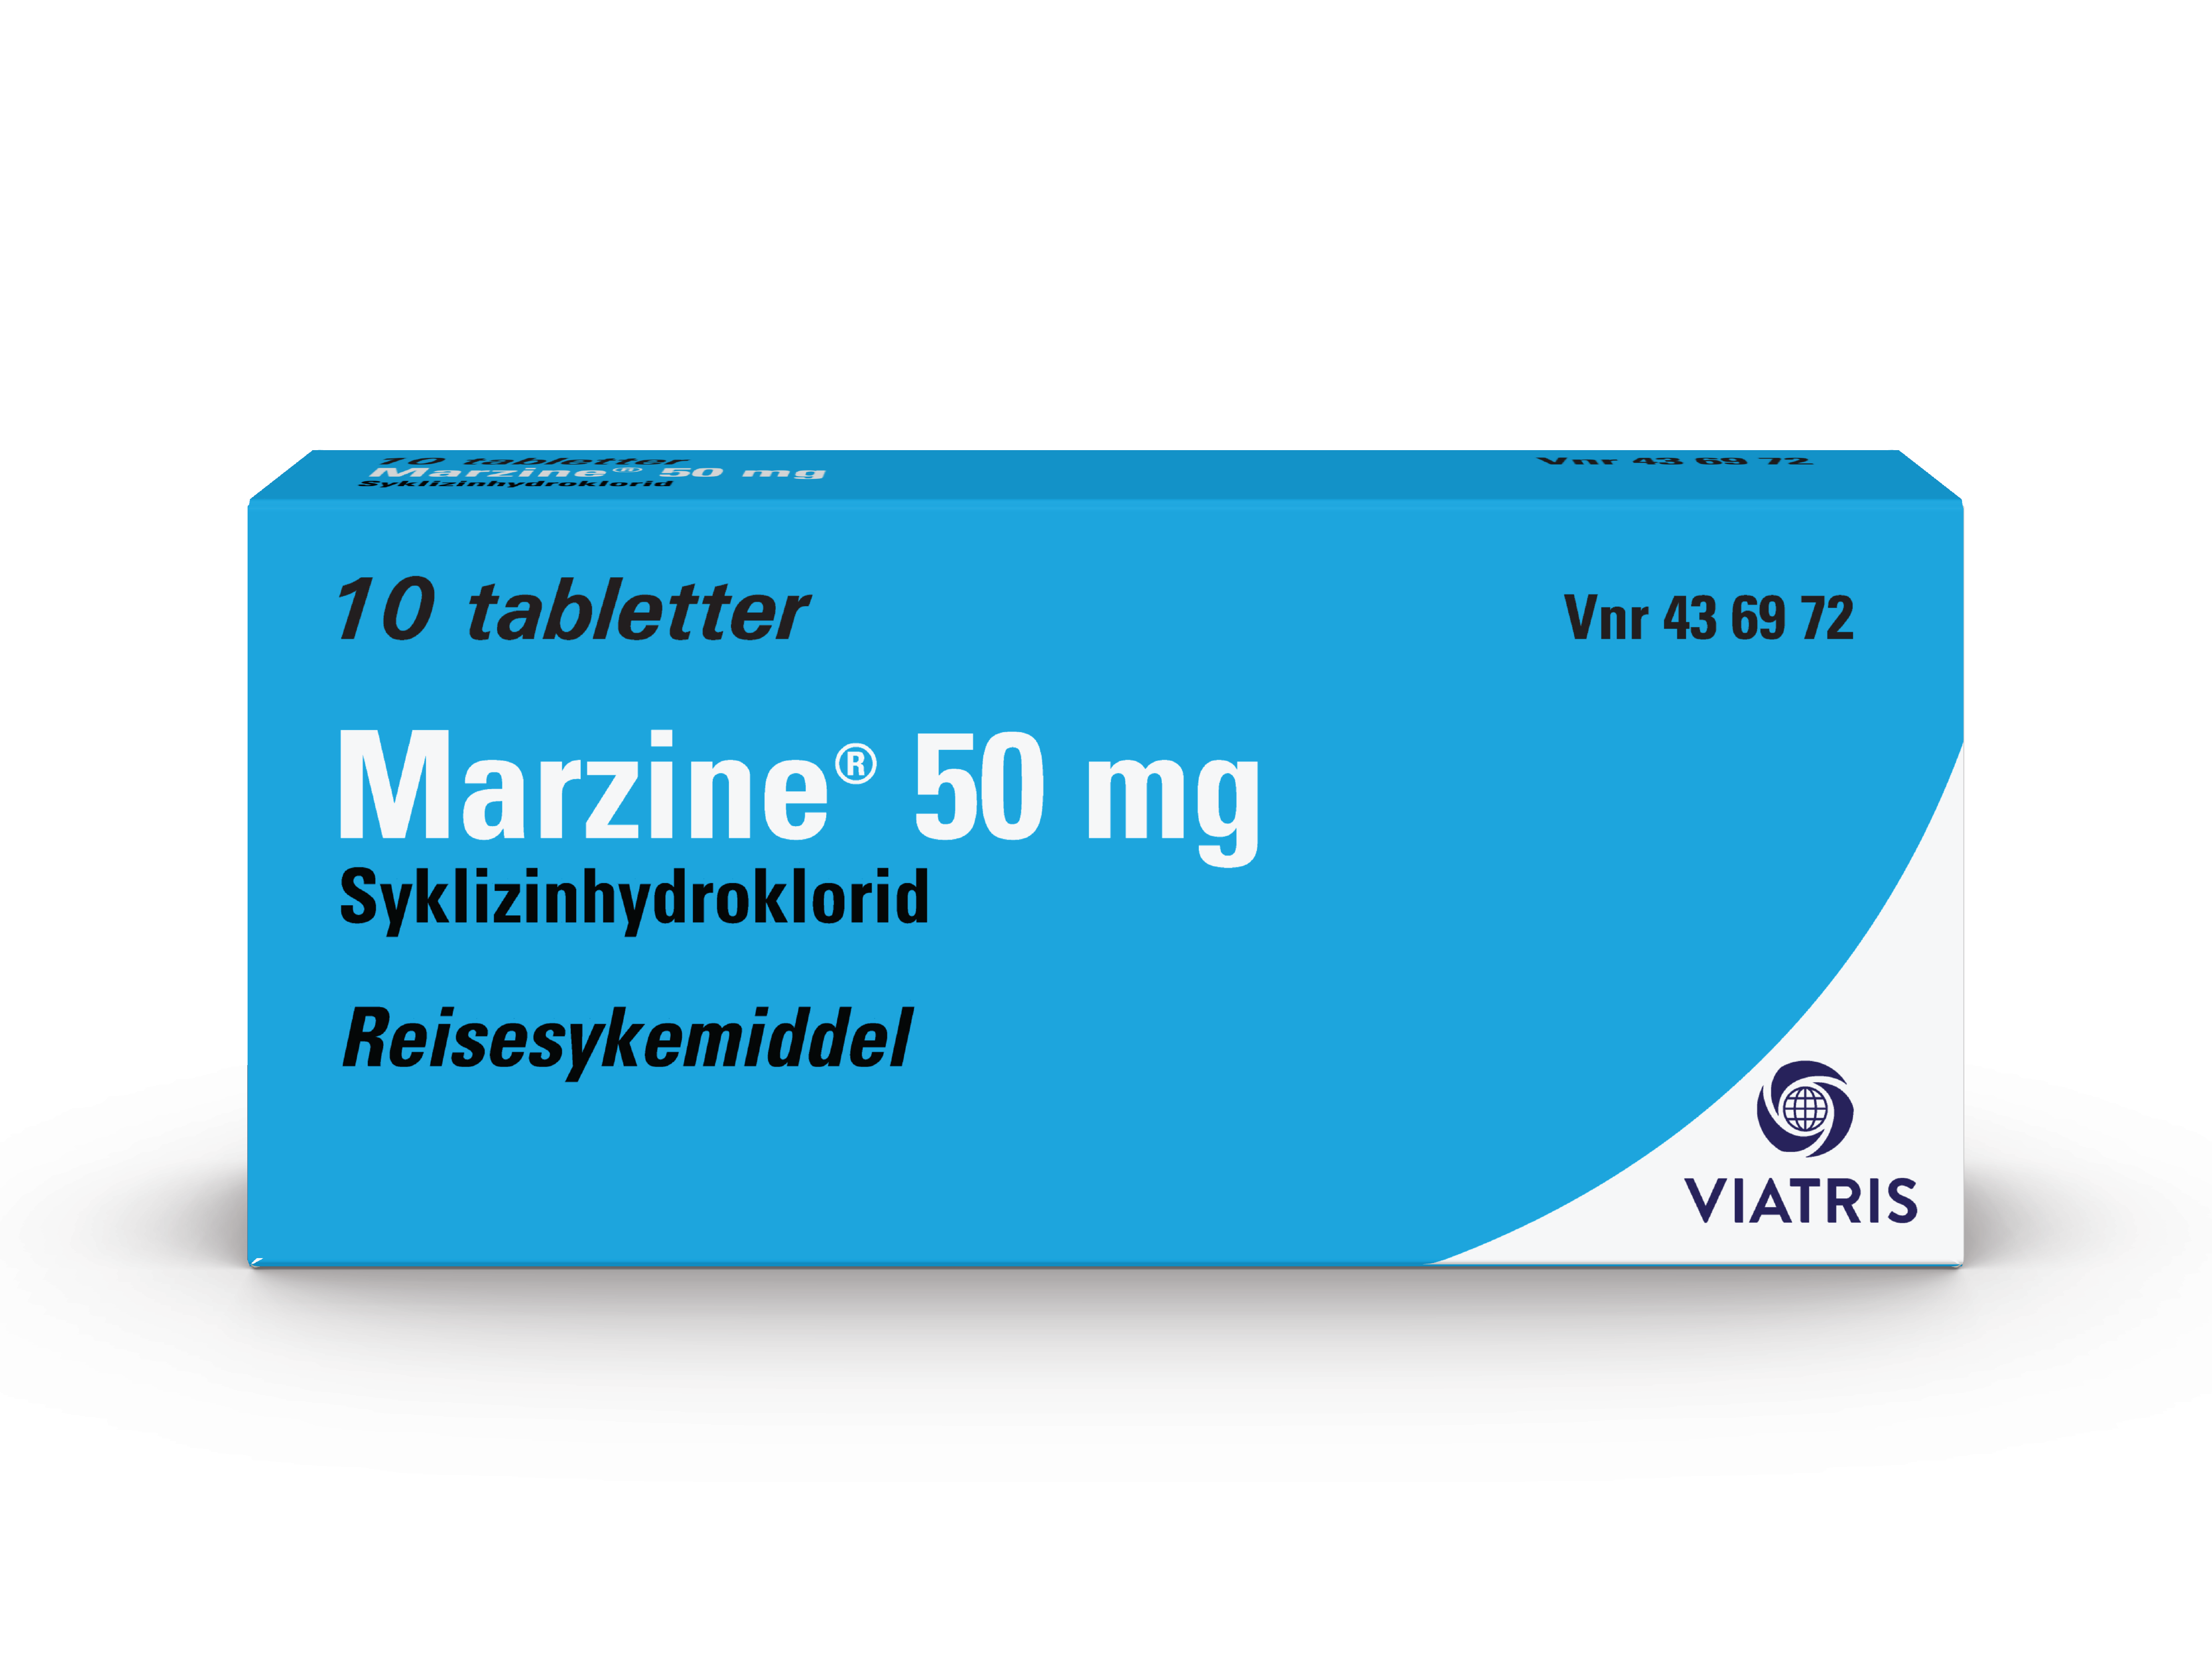 Marzine Tabletter 50mg, 10 stk. på brett